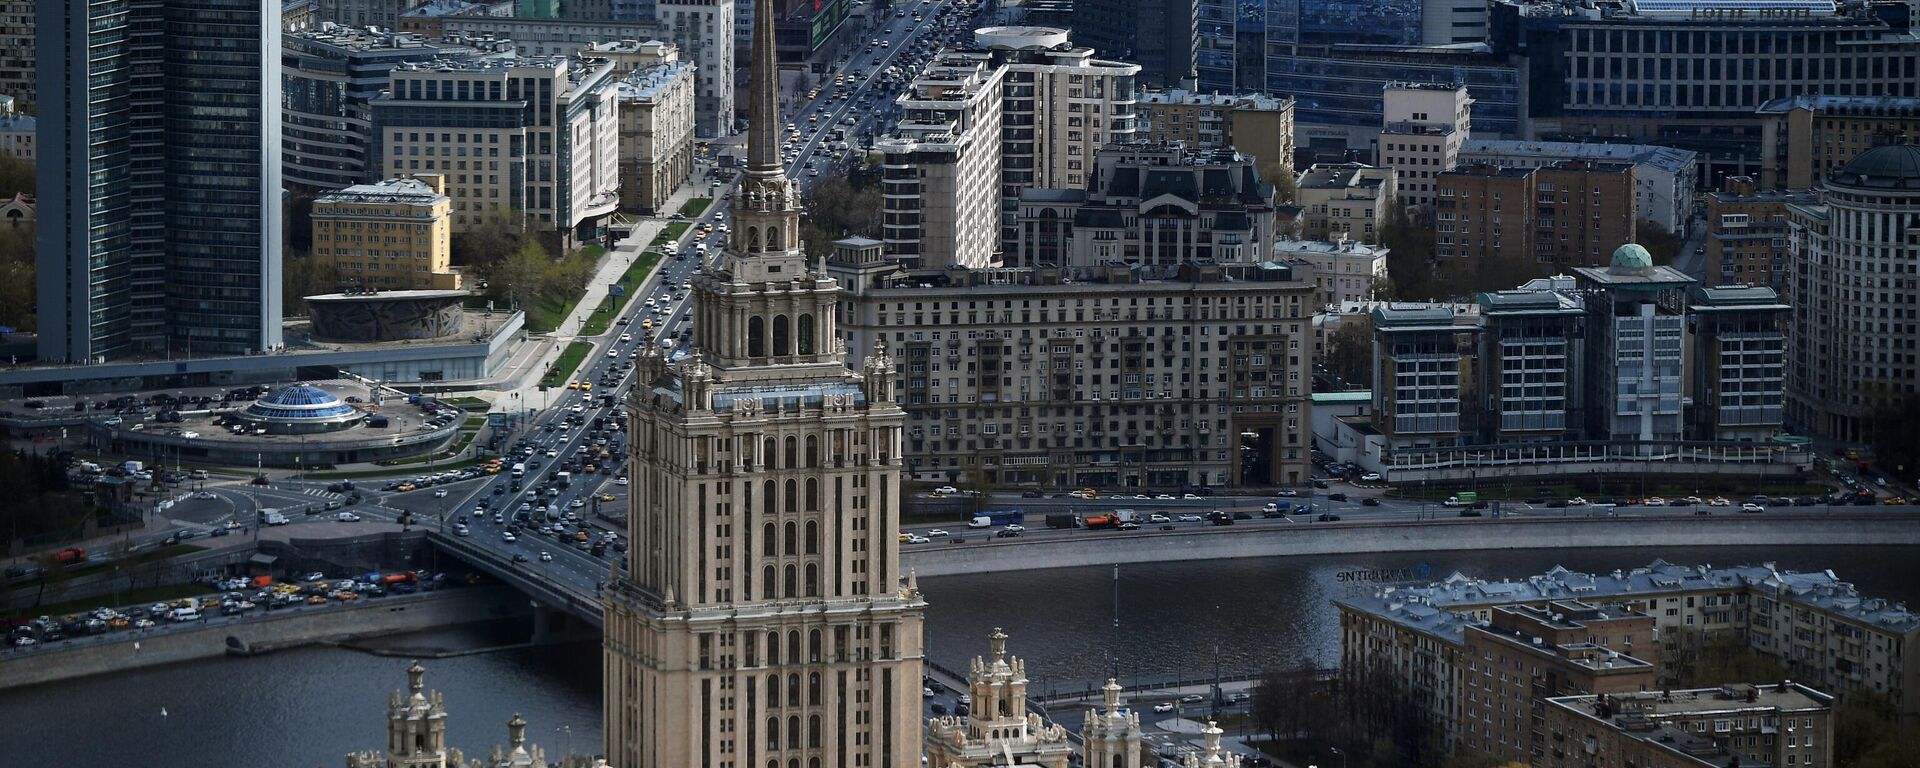 Вид на гостиницу Украина и Новый Арбат в Москве - Sputnik Азербайджан, 1920, 10.12.2021